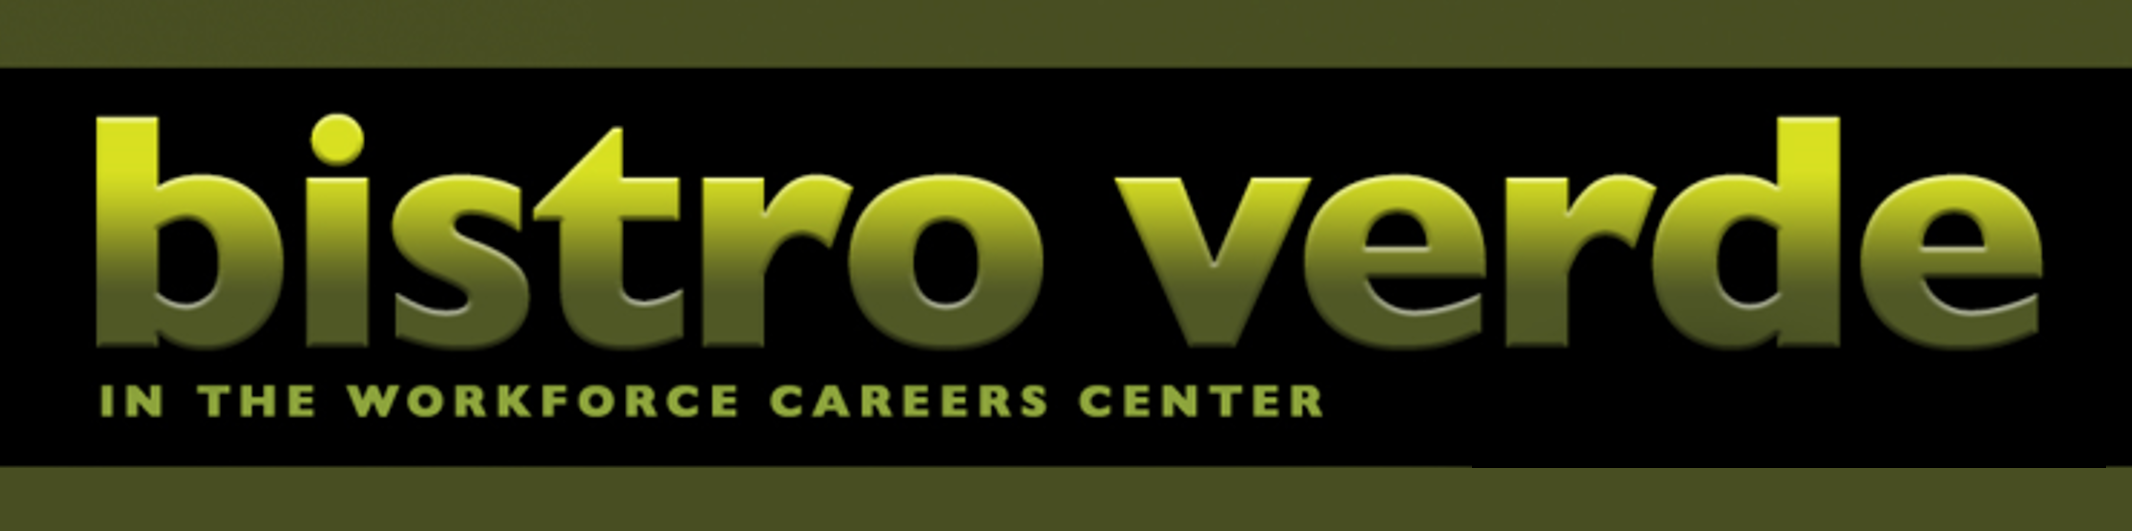 bistro verde in the Workforce Careers Center